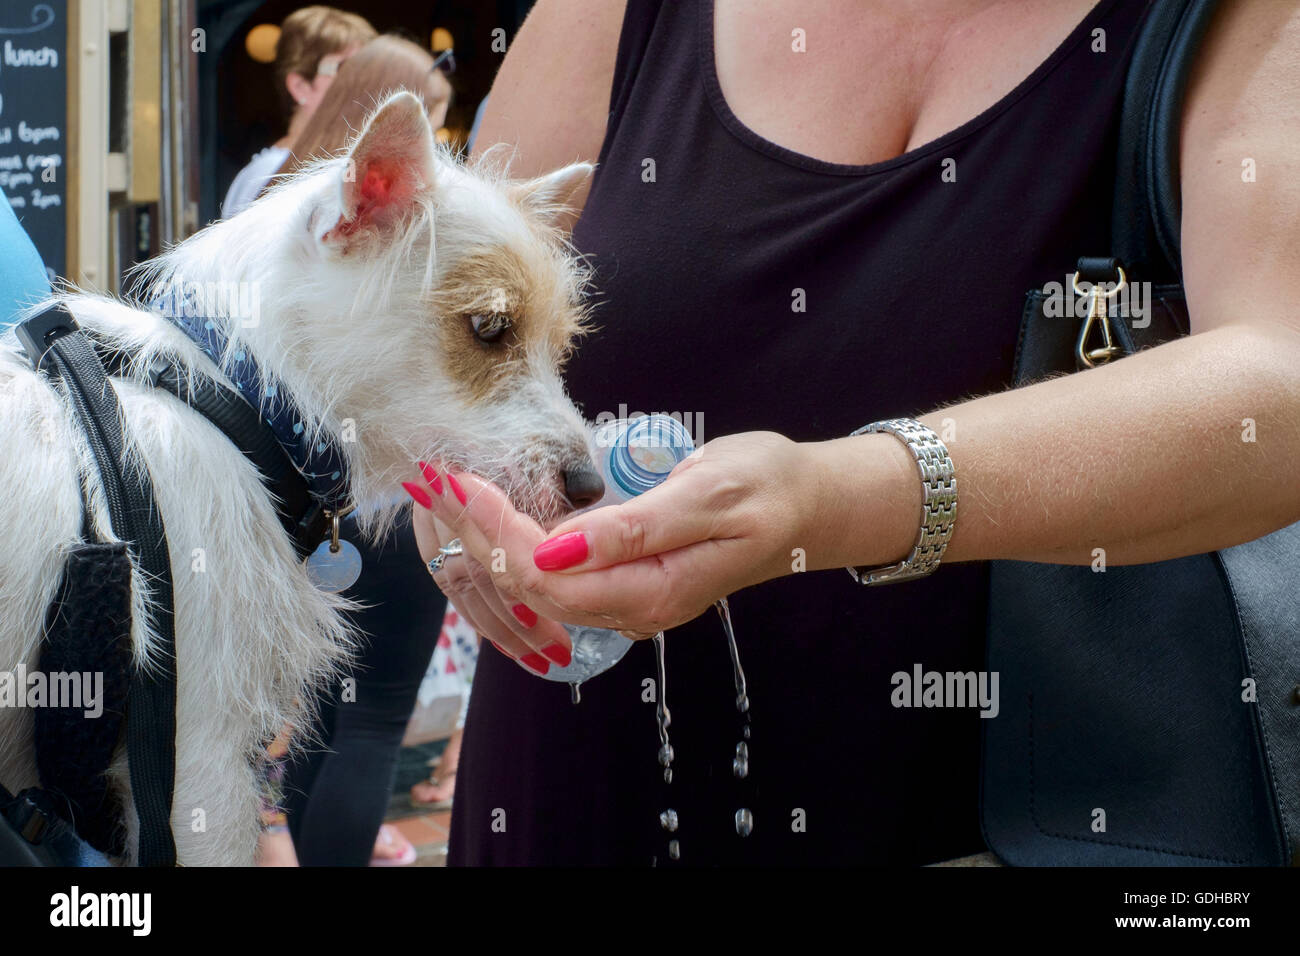 Un petit chien assoiffé est donné de l'eau de la bouteille à la main lors de beau temps chaud england uk Banque D'Images